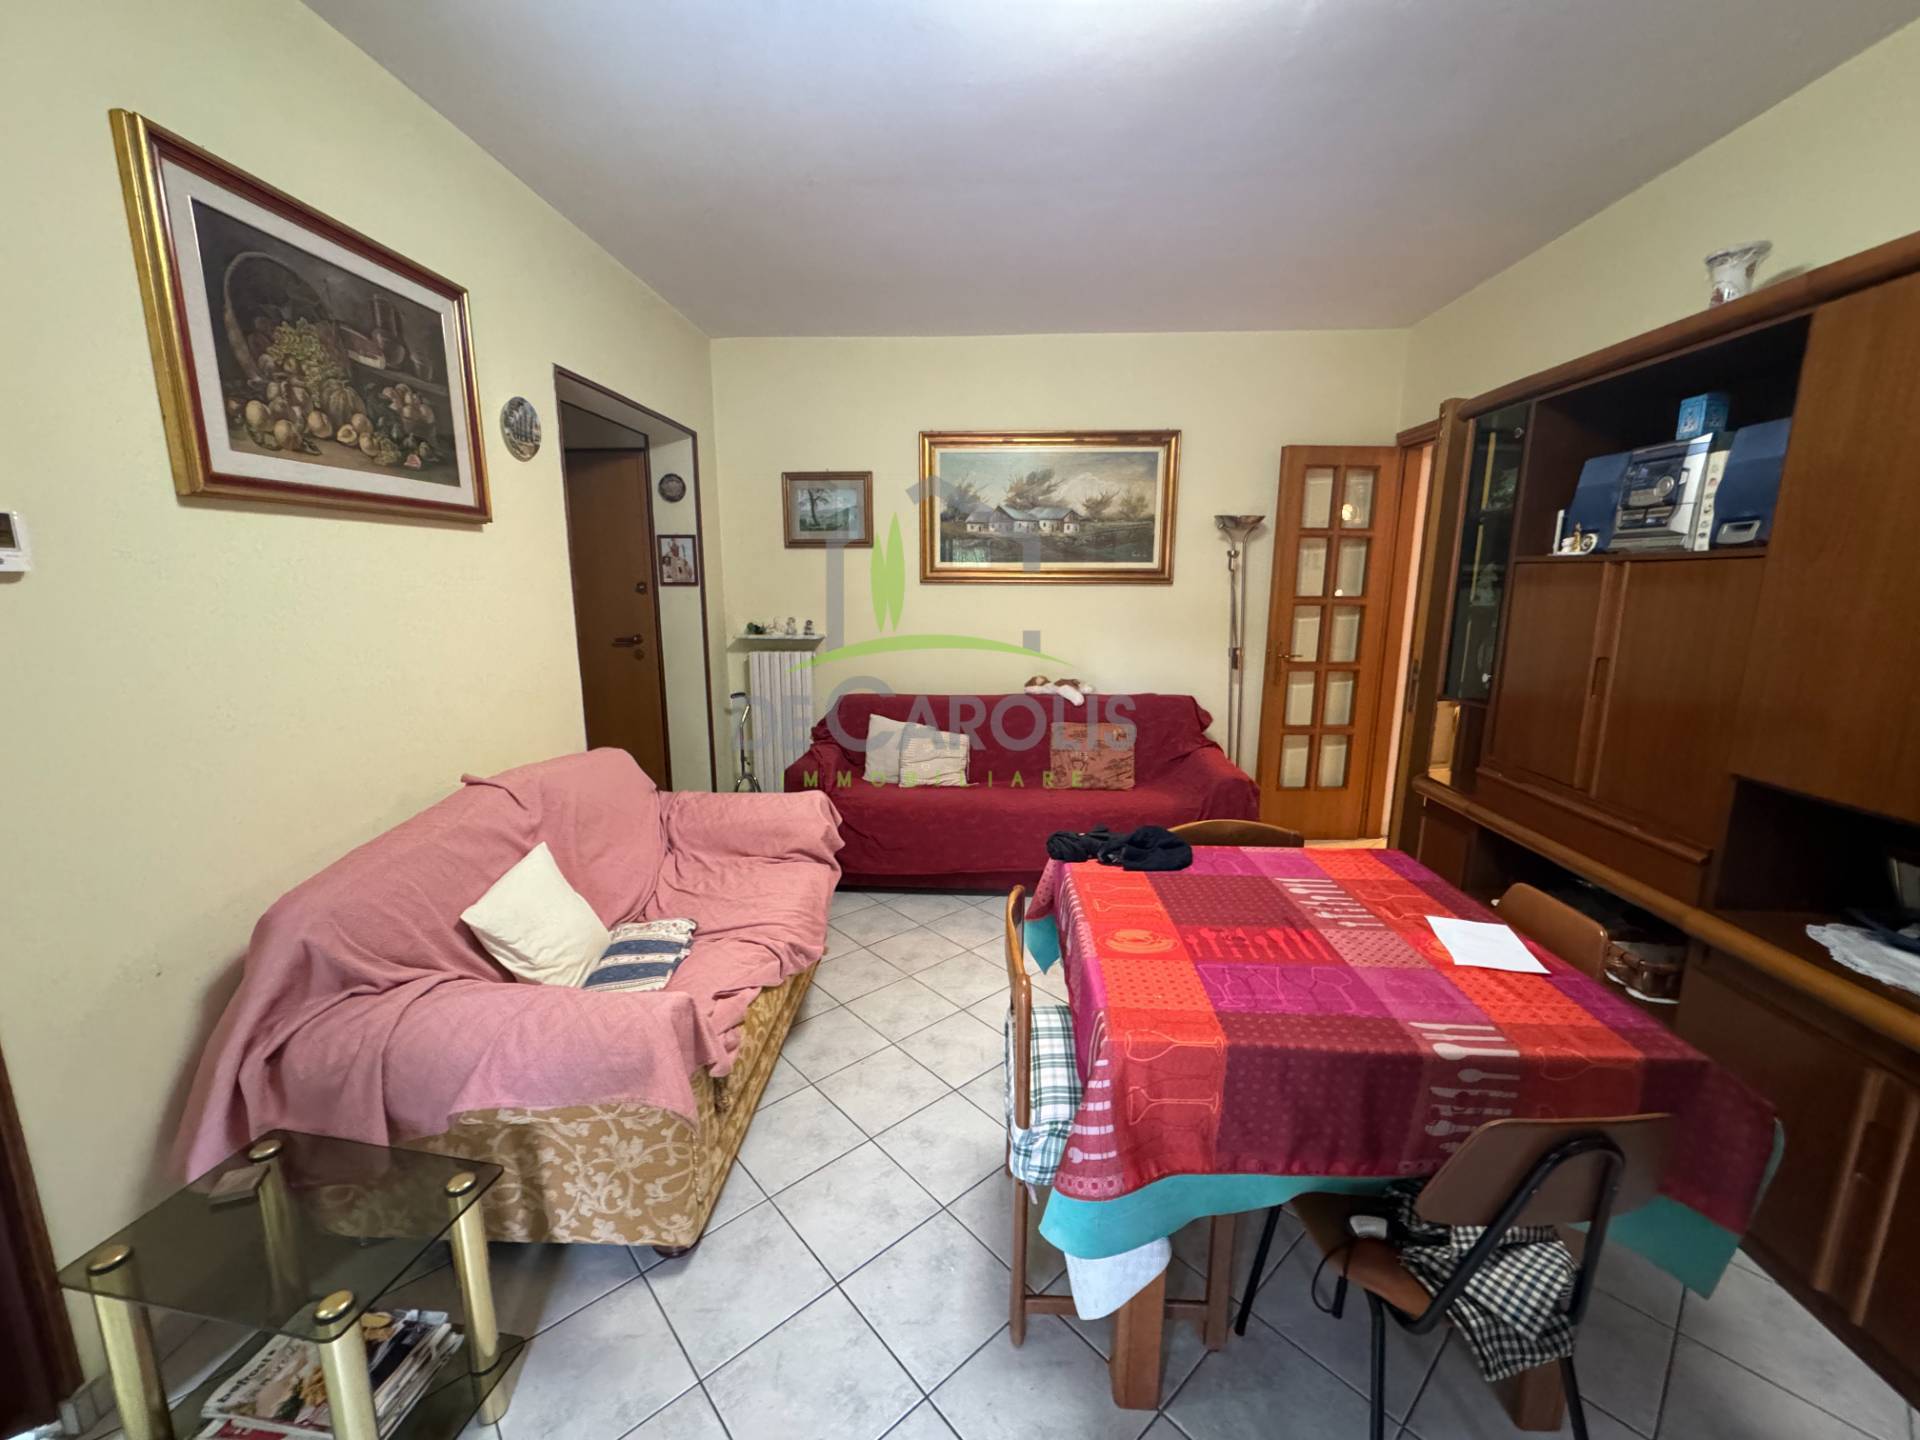 Appartamento in vendita a Ascoli Piceno, 6 locali, zona Località: BorgoSolest?, prezzo € 95.000 | PortaleAgenzieImmobiliari.it